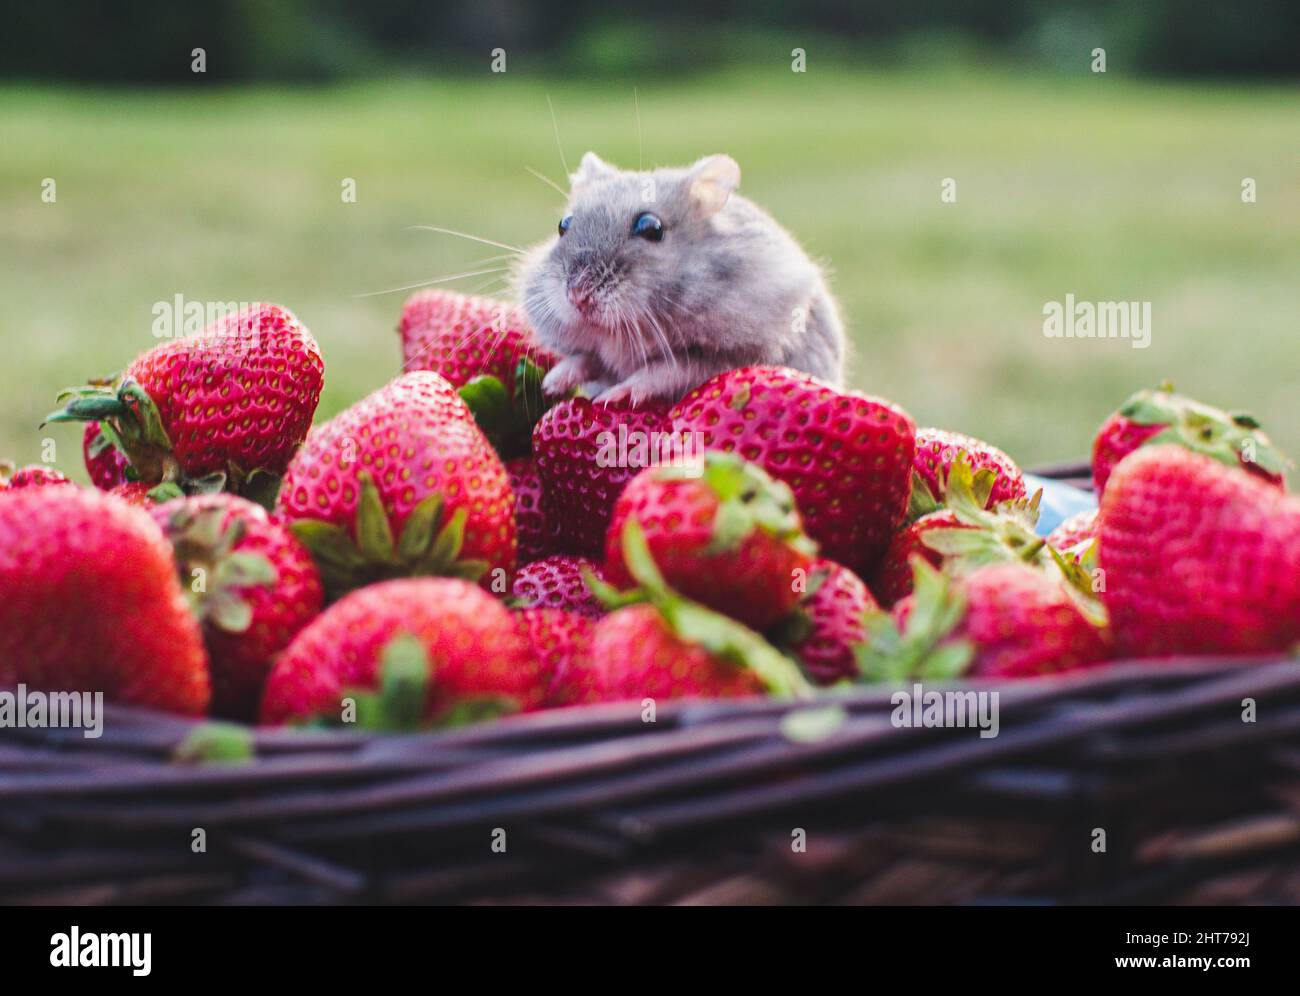 Carino criceto piccolo che munching su alcune fragole rosse mature in un cestino su uno sfondo sfocato Foto Stock